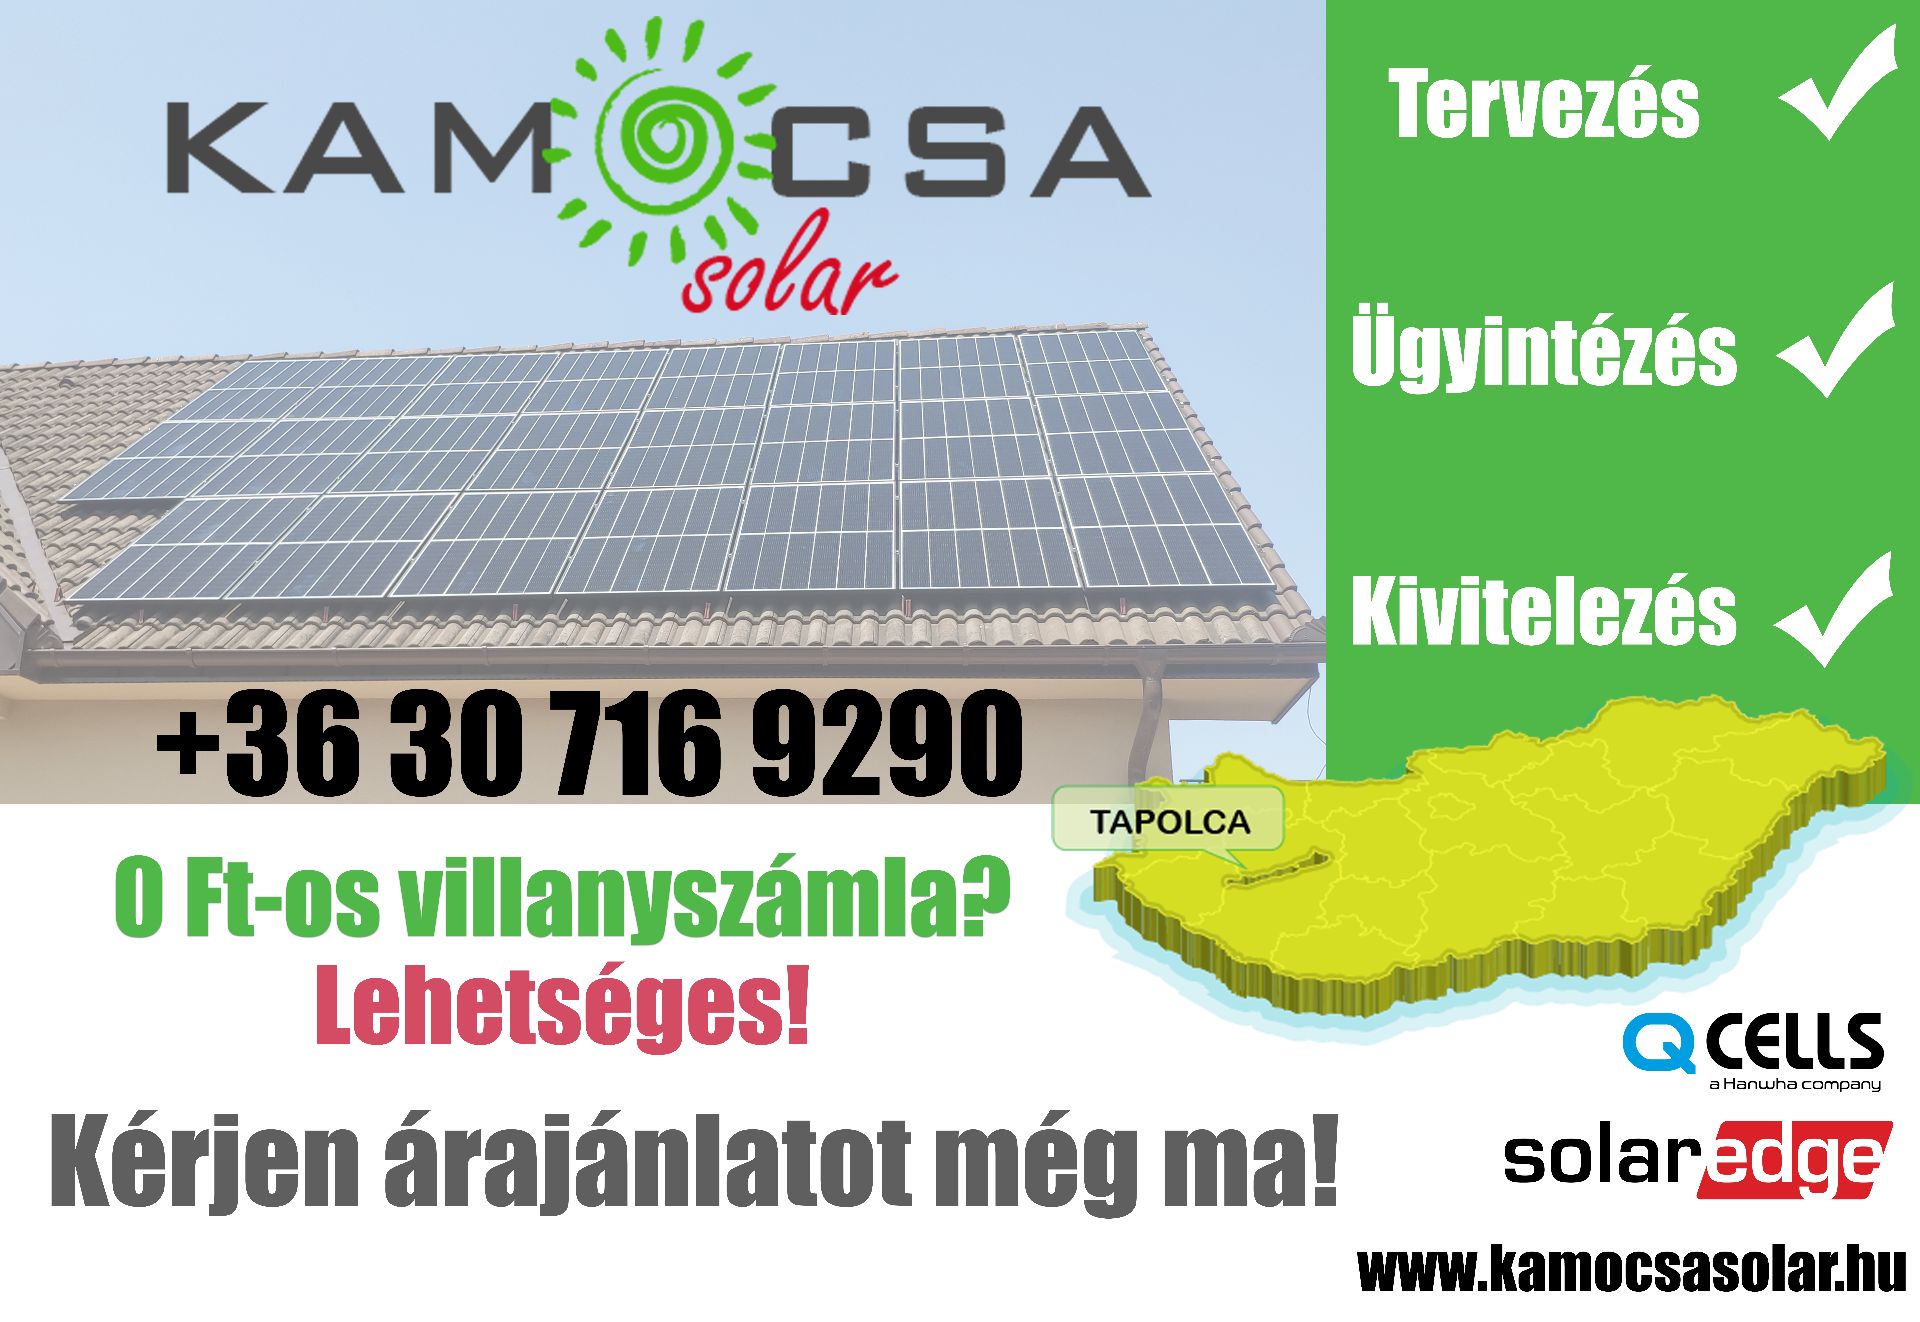 Kamocsa Solar